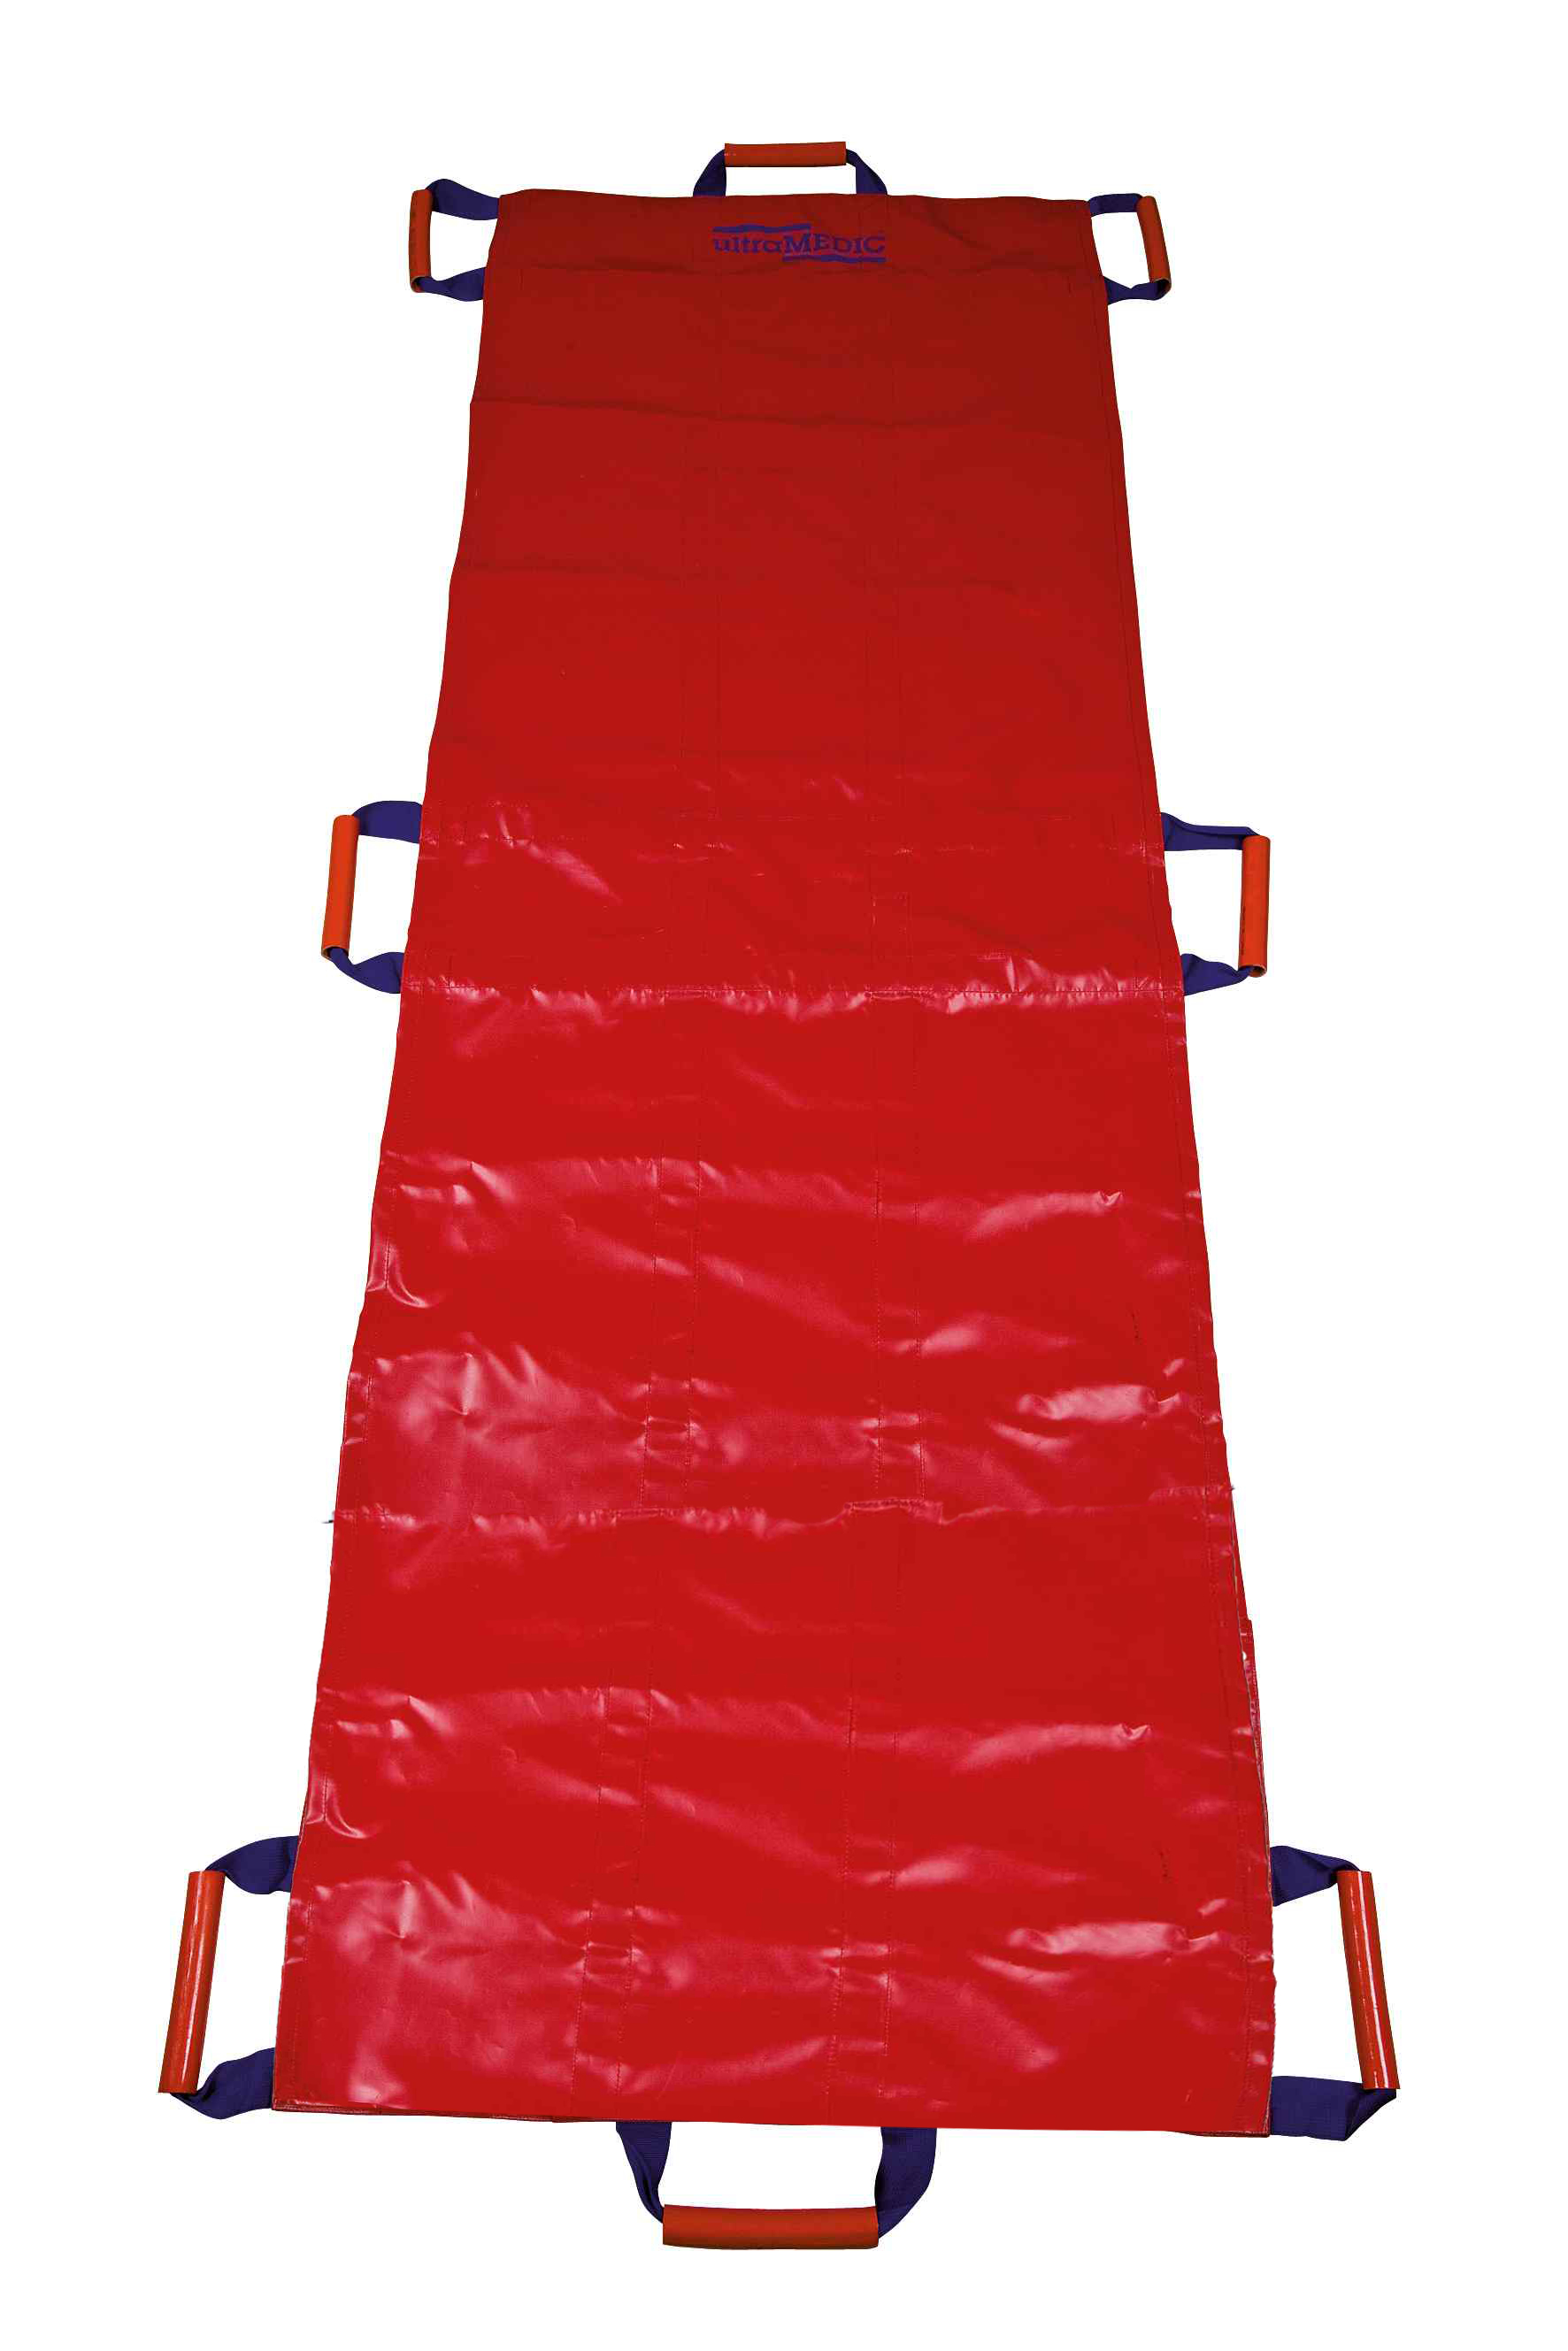 Rettungstuch (Bergetuch) DIN 13040, Farbe: rot, PVC-beschichtet, ca. 2.000x700 mm, an den Längsseiten je 3 Trageschlaufen sowie an Kopf- und Fußende ein Tragegriff, Gewicht ca. 1,8 kg